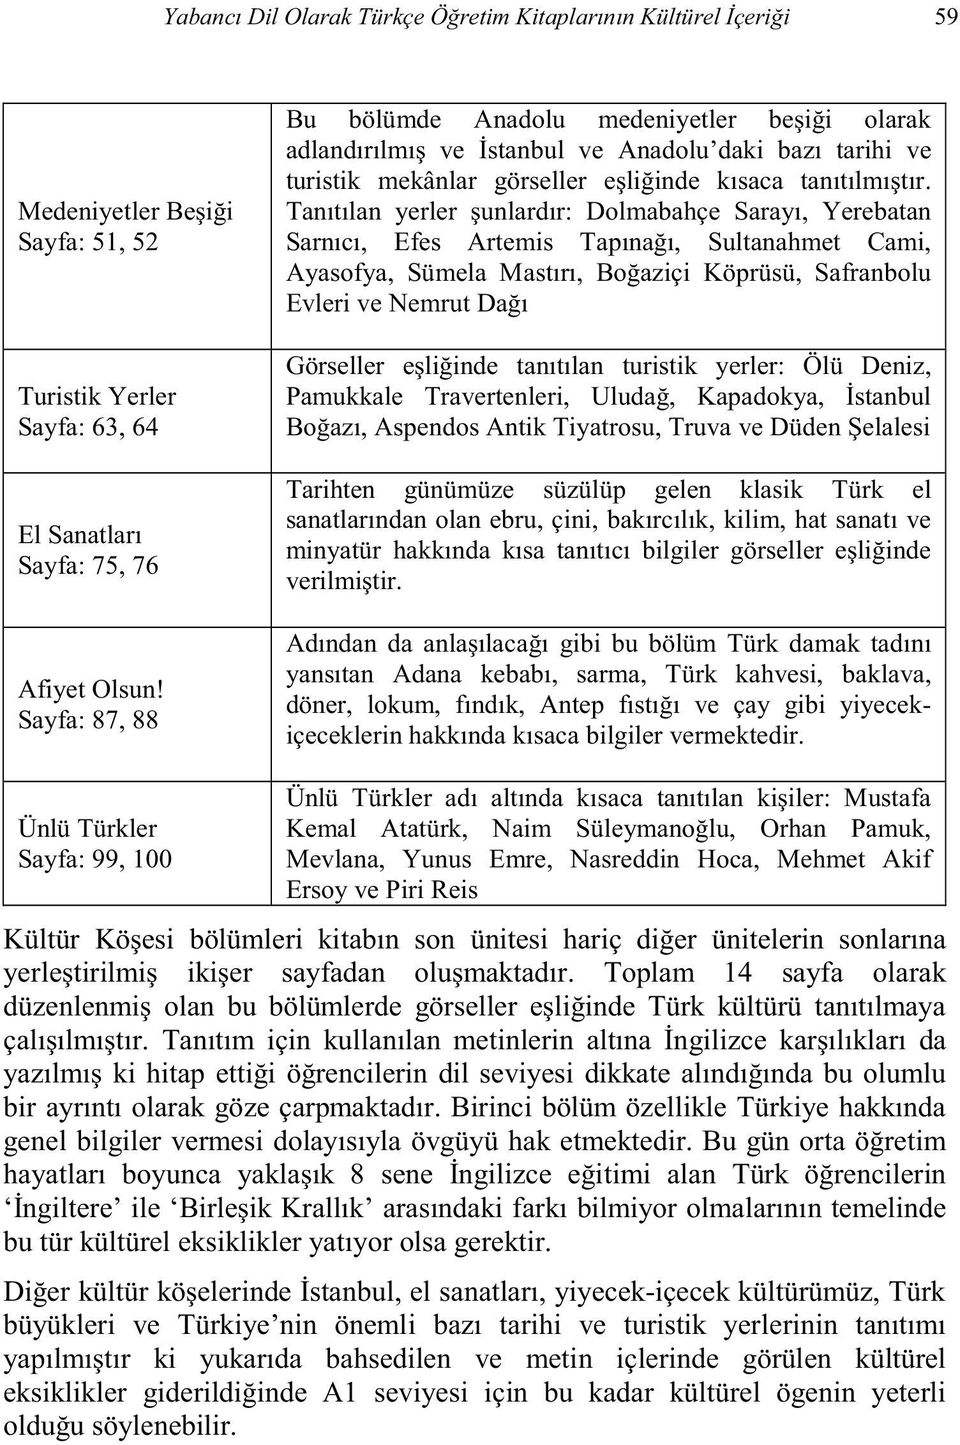 Ünlü Türkler Sayfa: 99, 100 Ünlü Türk Mevlana, Yunus Emre, Nasreddin Hoca, Mehmet Akif